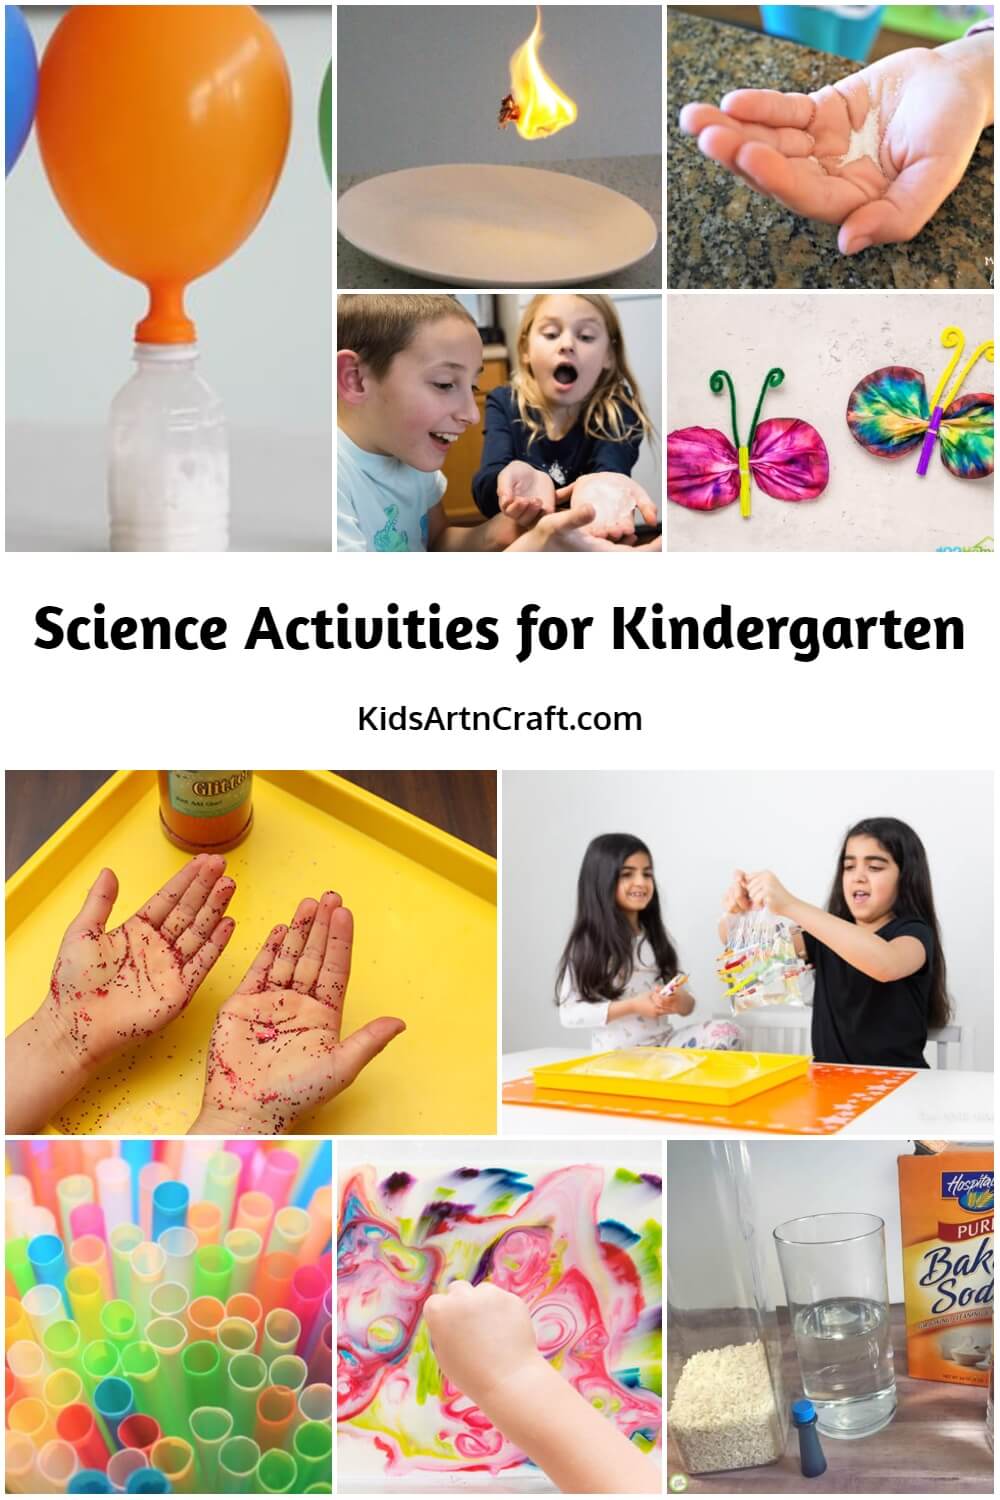 Science Activities for Kindergarten